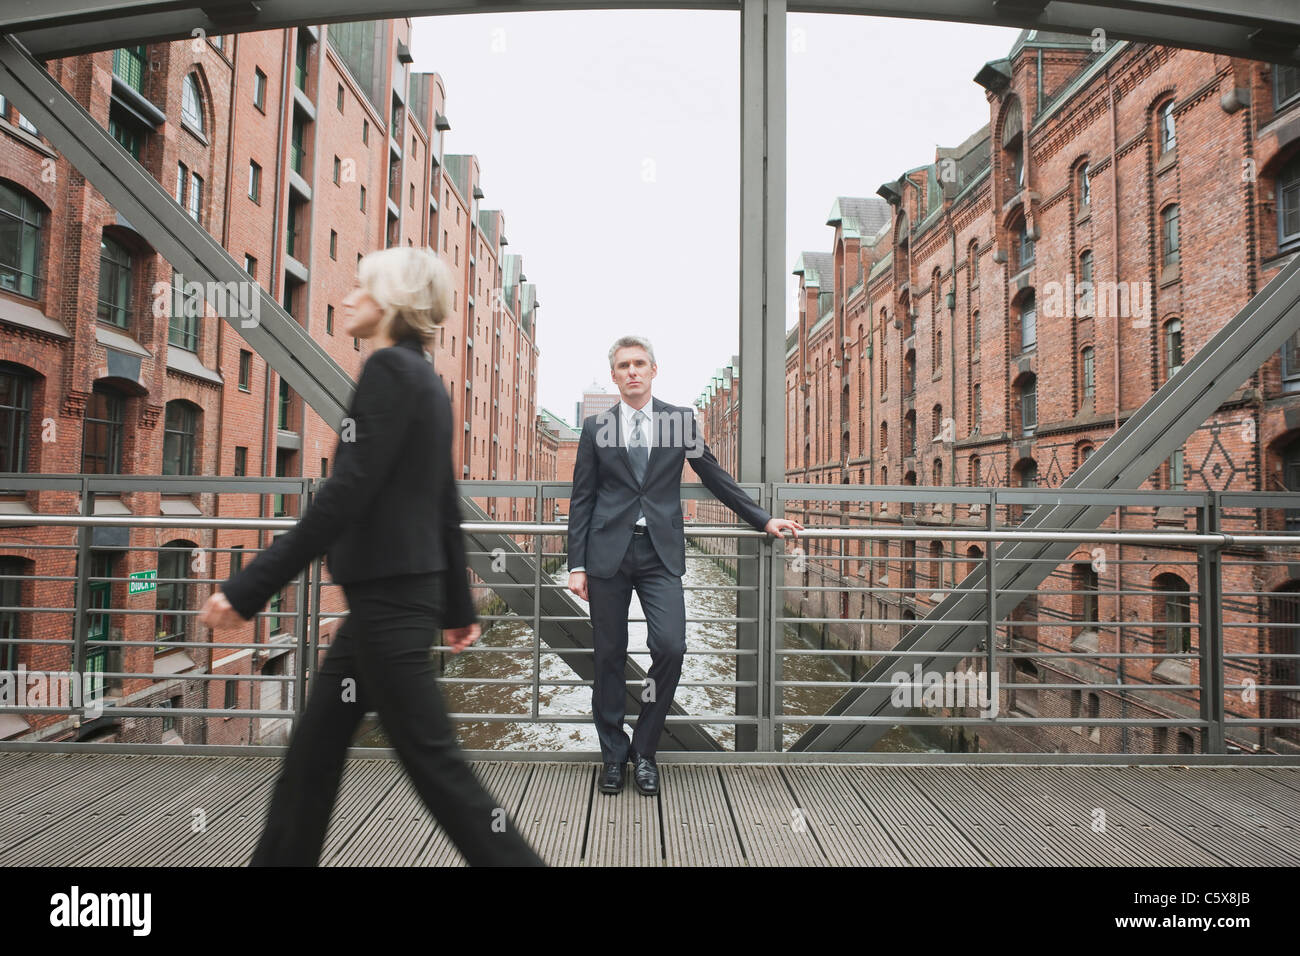 Germania, Amburgo, imprenditrice attraversando il ponte, imprenditore in background appoggiata contro la ringhiera di protezione Foto Stock